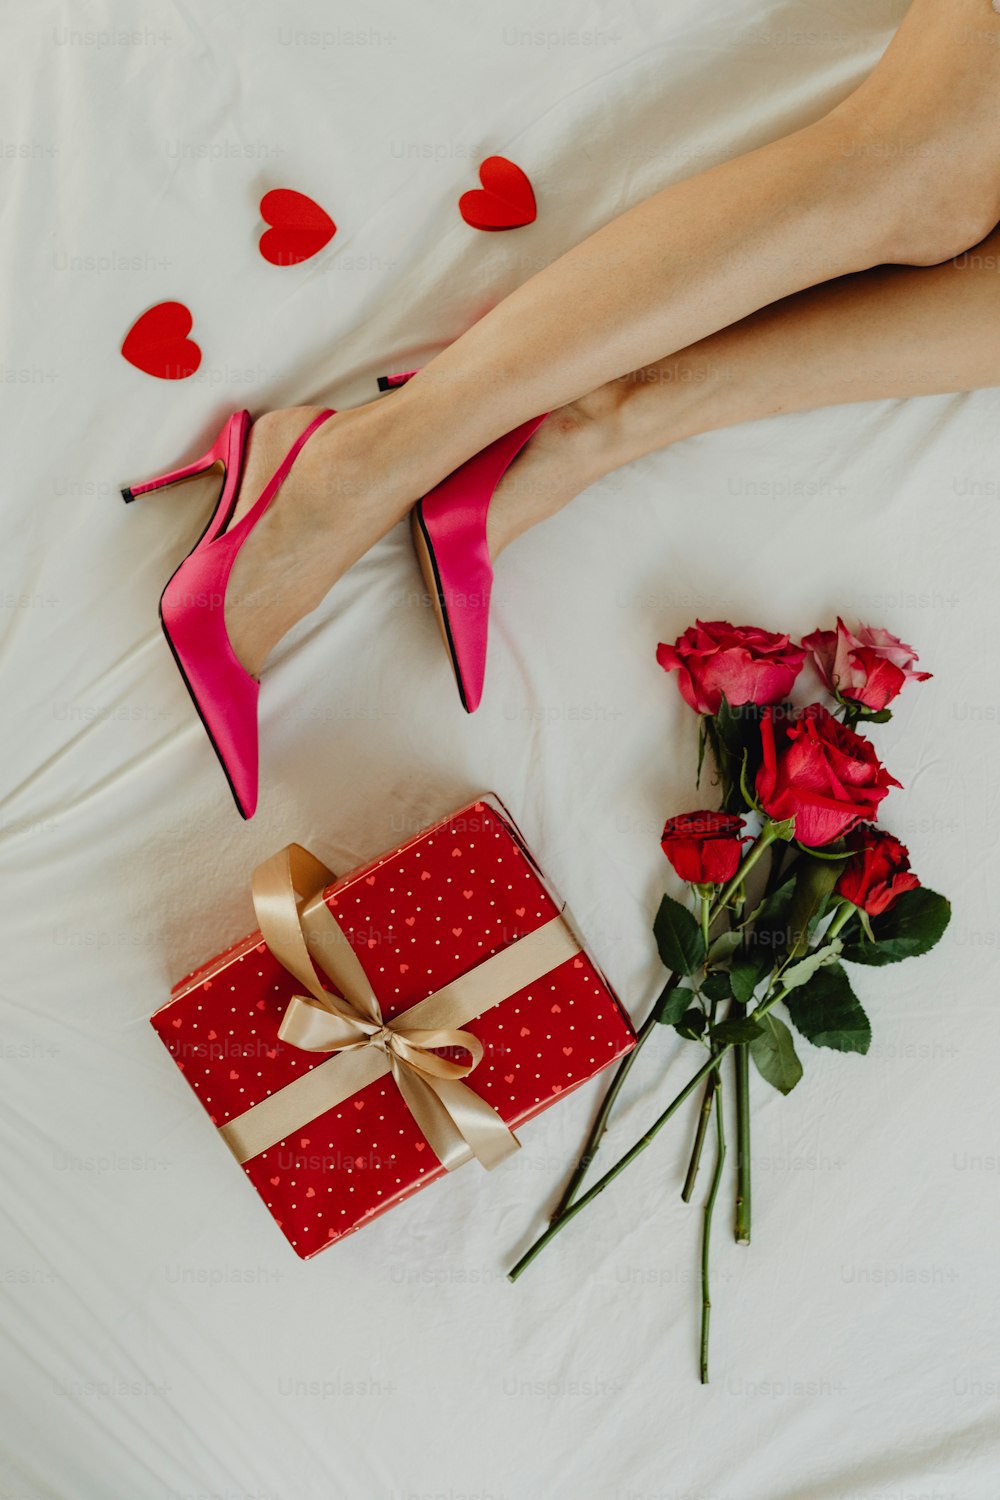 Una mujer acostada en la cama con un regalo y rosas